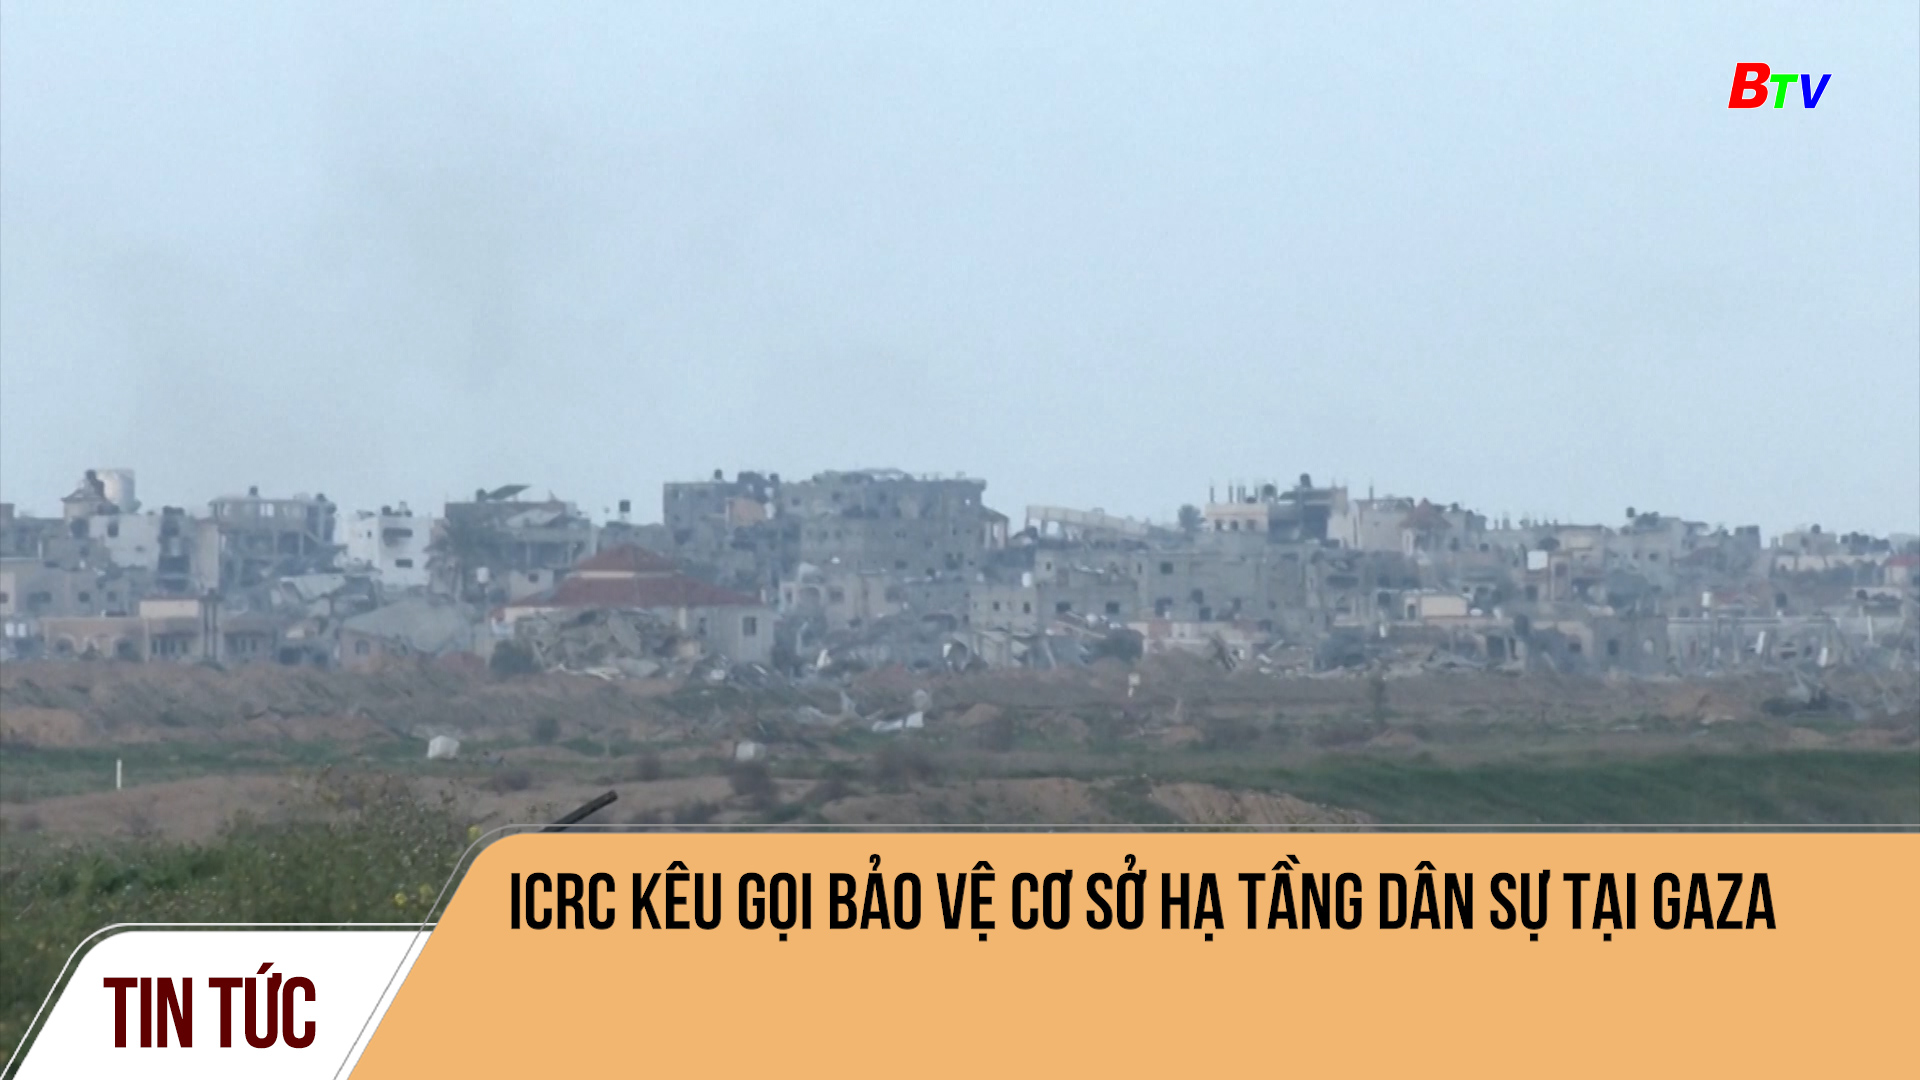 ICRC kêu gọi bảo vệ cơ sở hạ tầng dân sự tại Gaza